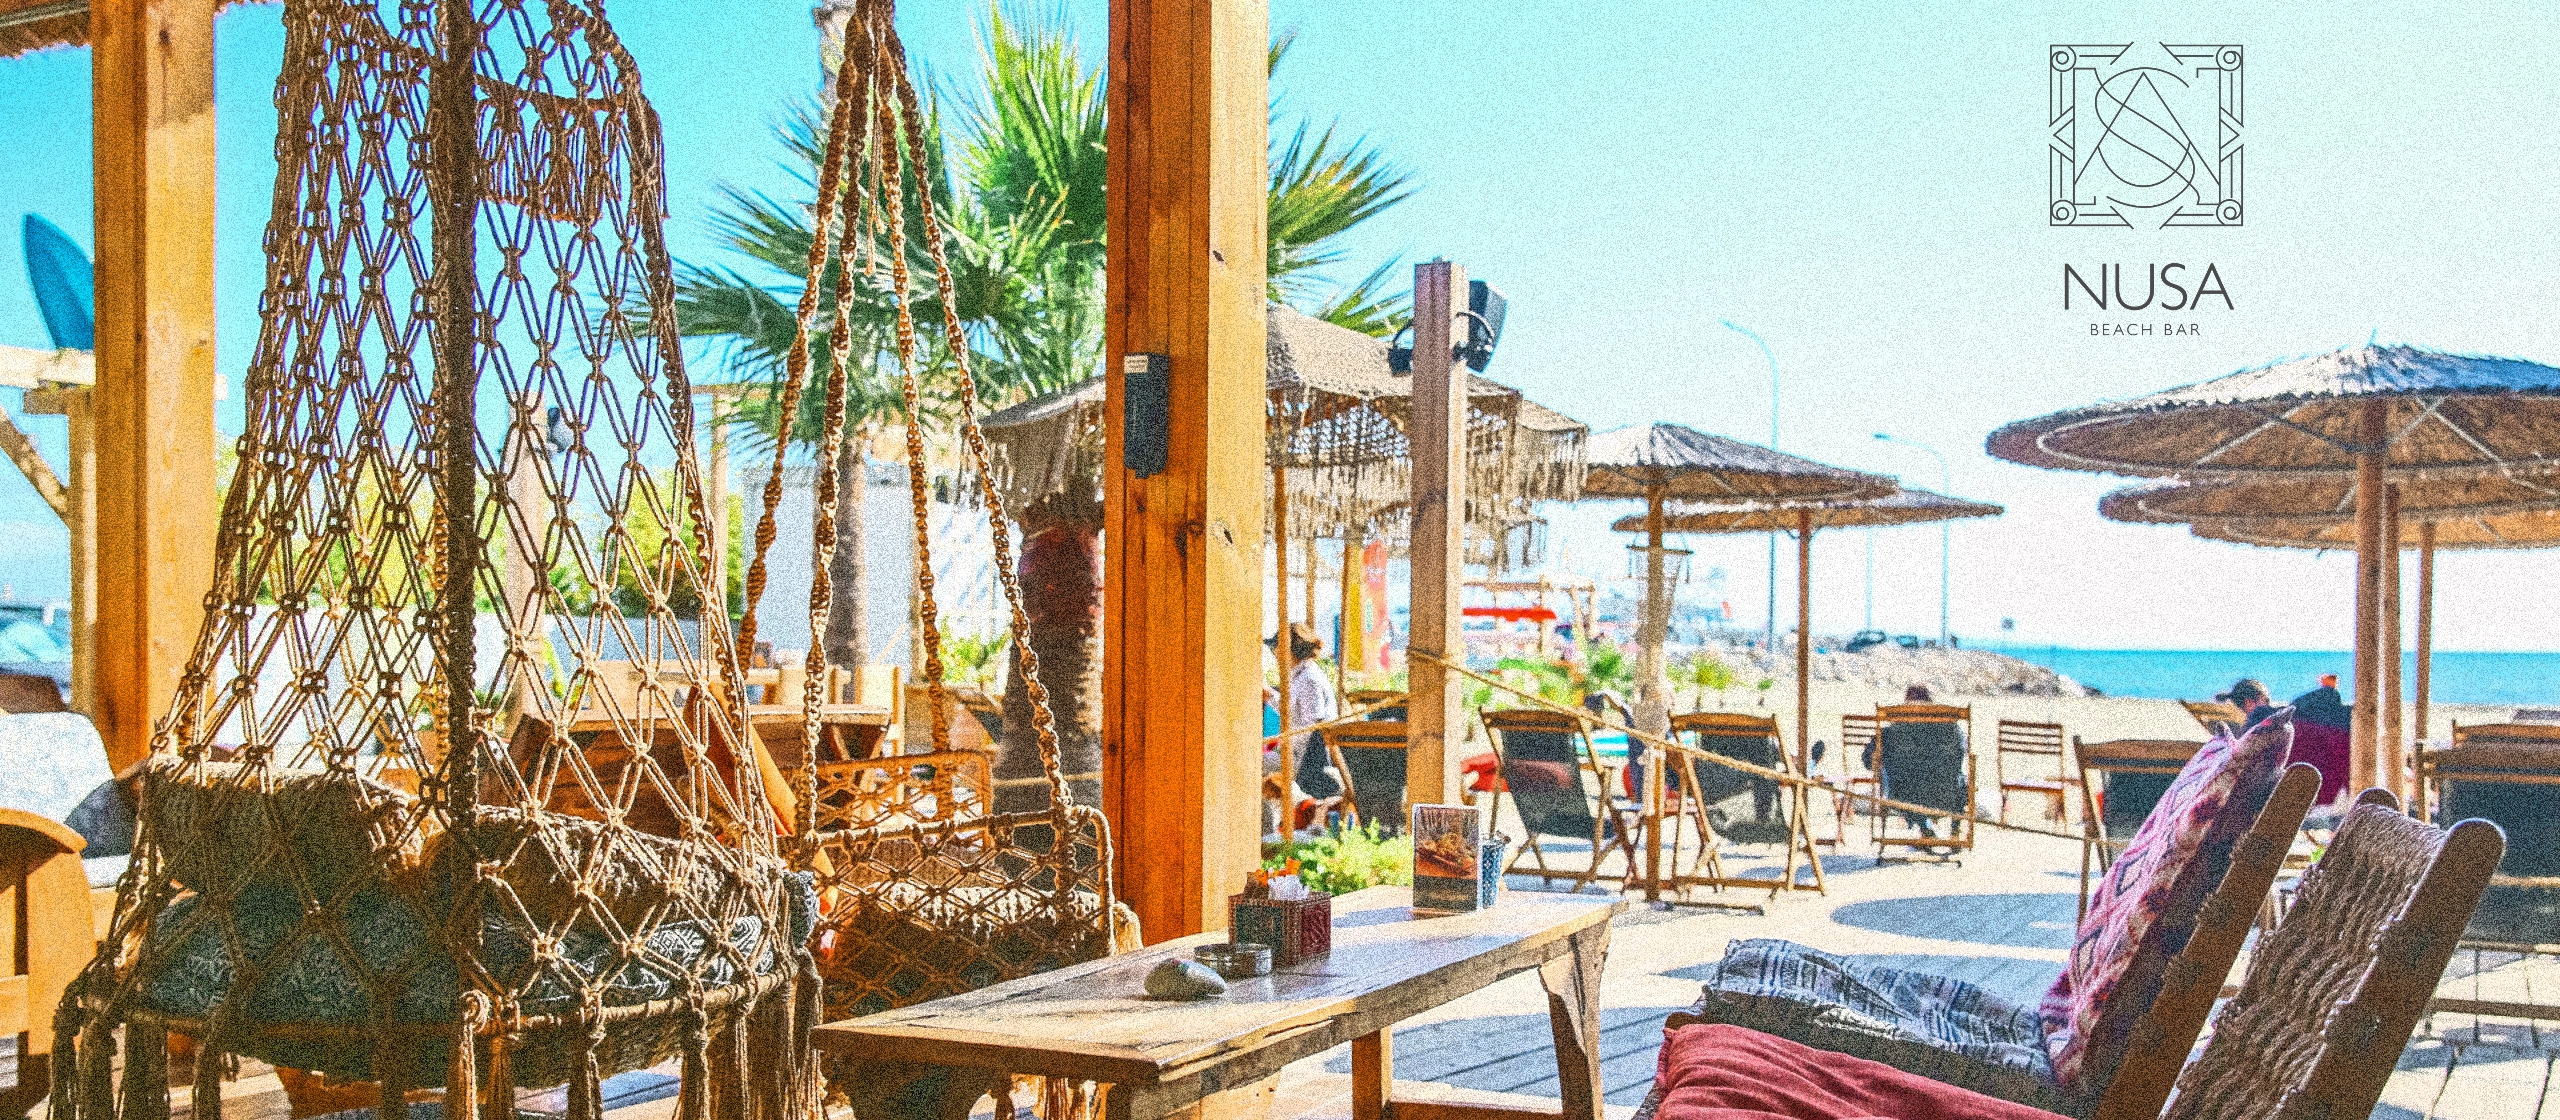 NUSA Beach Bar